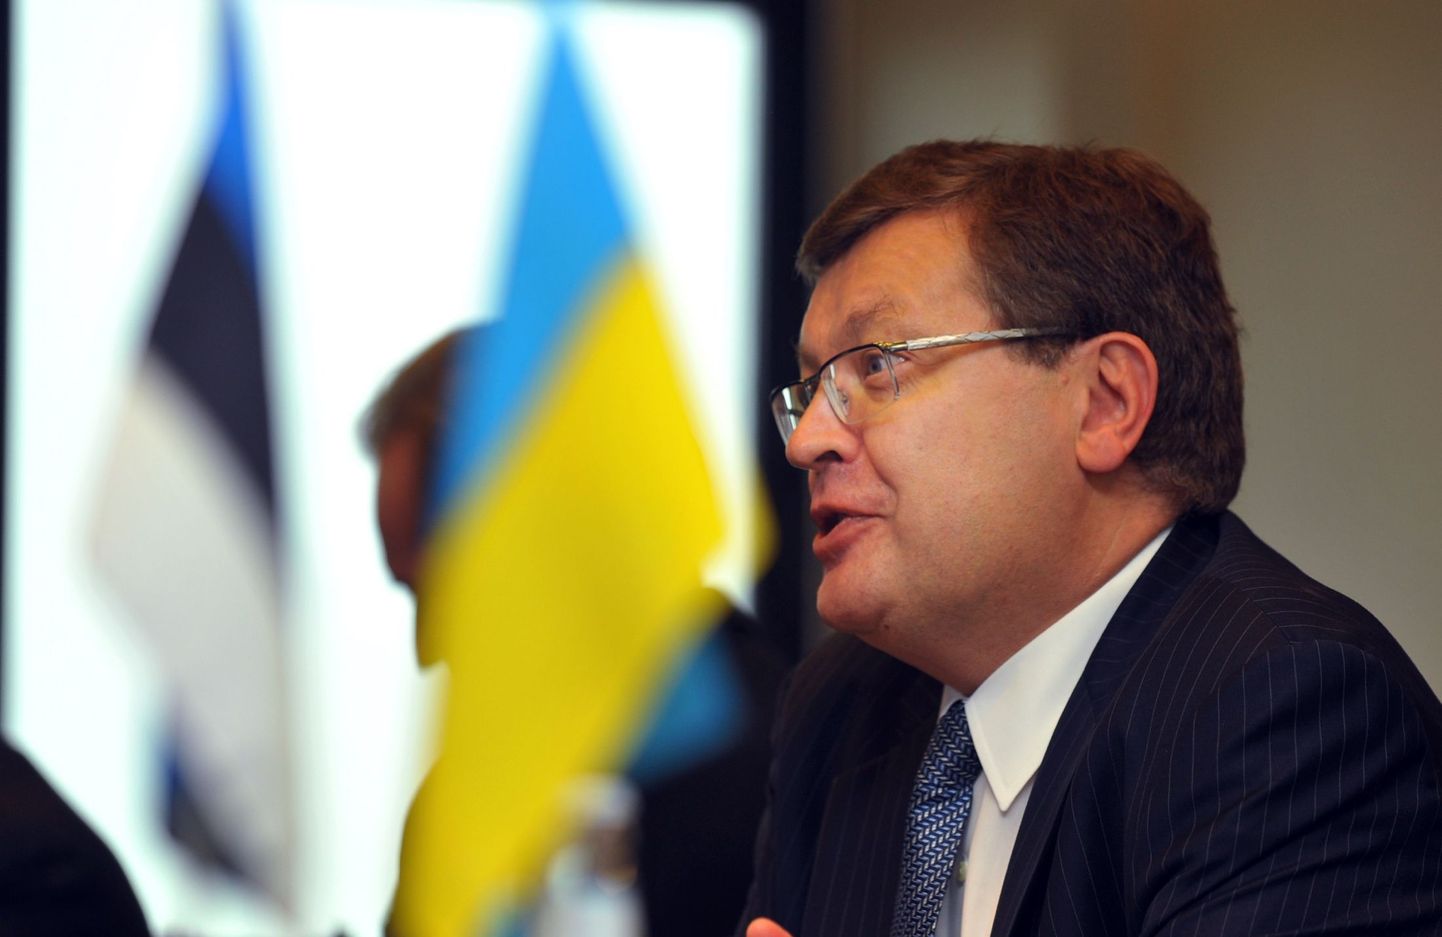 Eestis ametlikul visiidil viibiv Ukraina välisminister Kostyantyn Gryshchenko tänahommikusel pressikonverentsil.